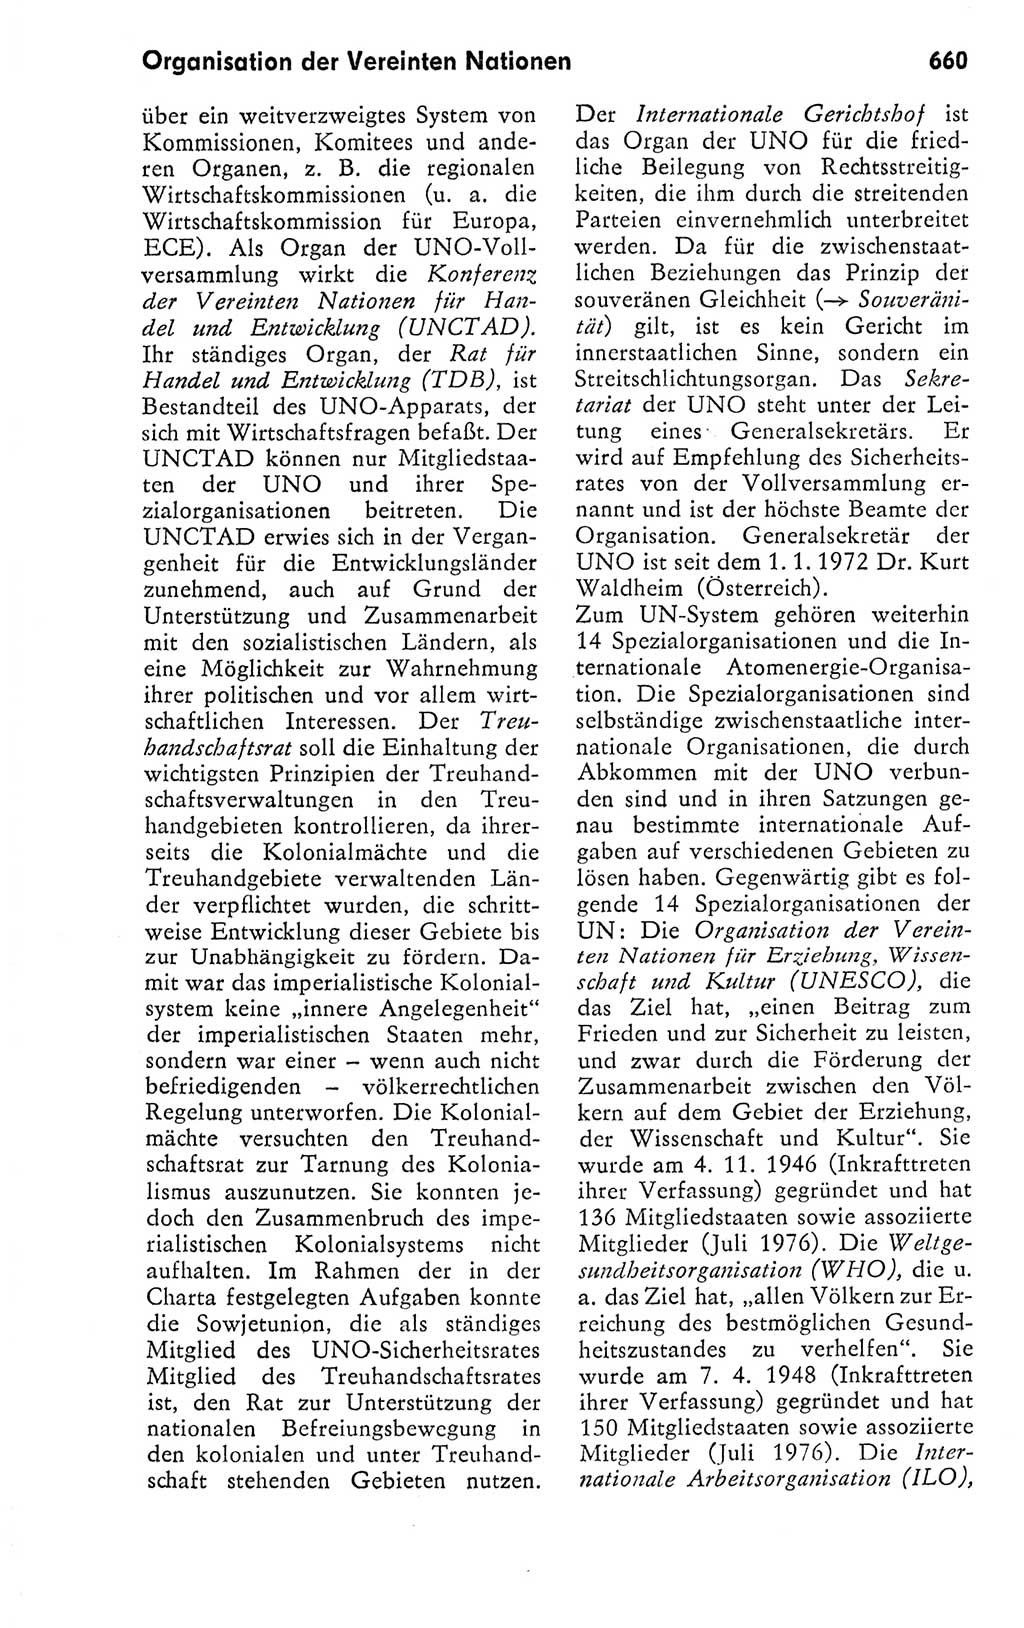 Kleines politisches Wörterbuch [Deutsche Demokratische Republik (DDR)] 1978, Seite 660 (Kl. pol. Wb. DDR 1978, S. 660)